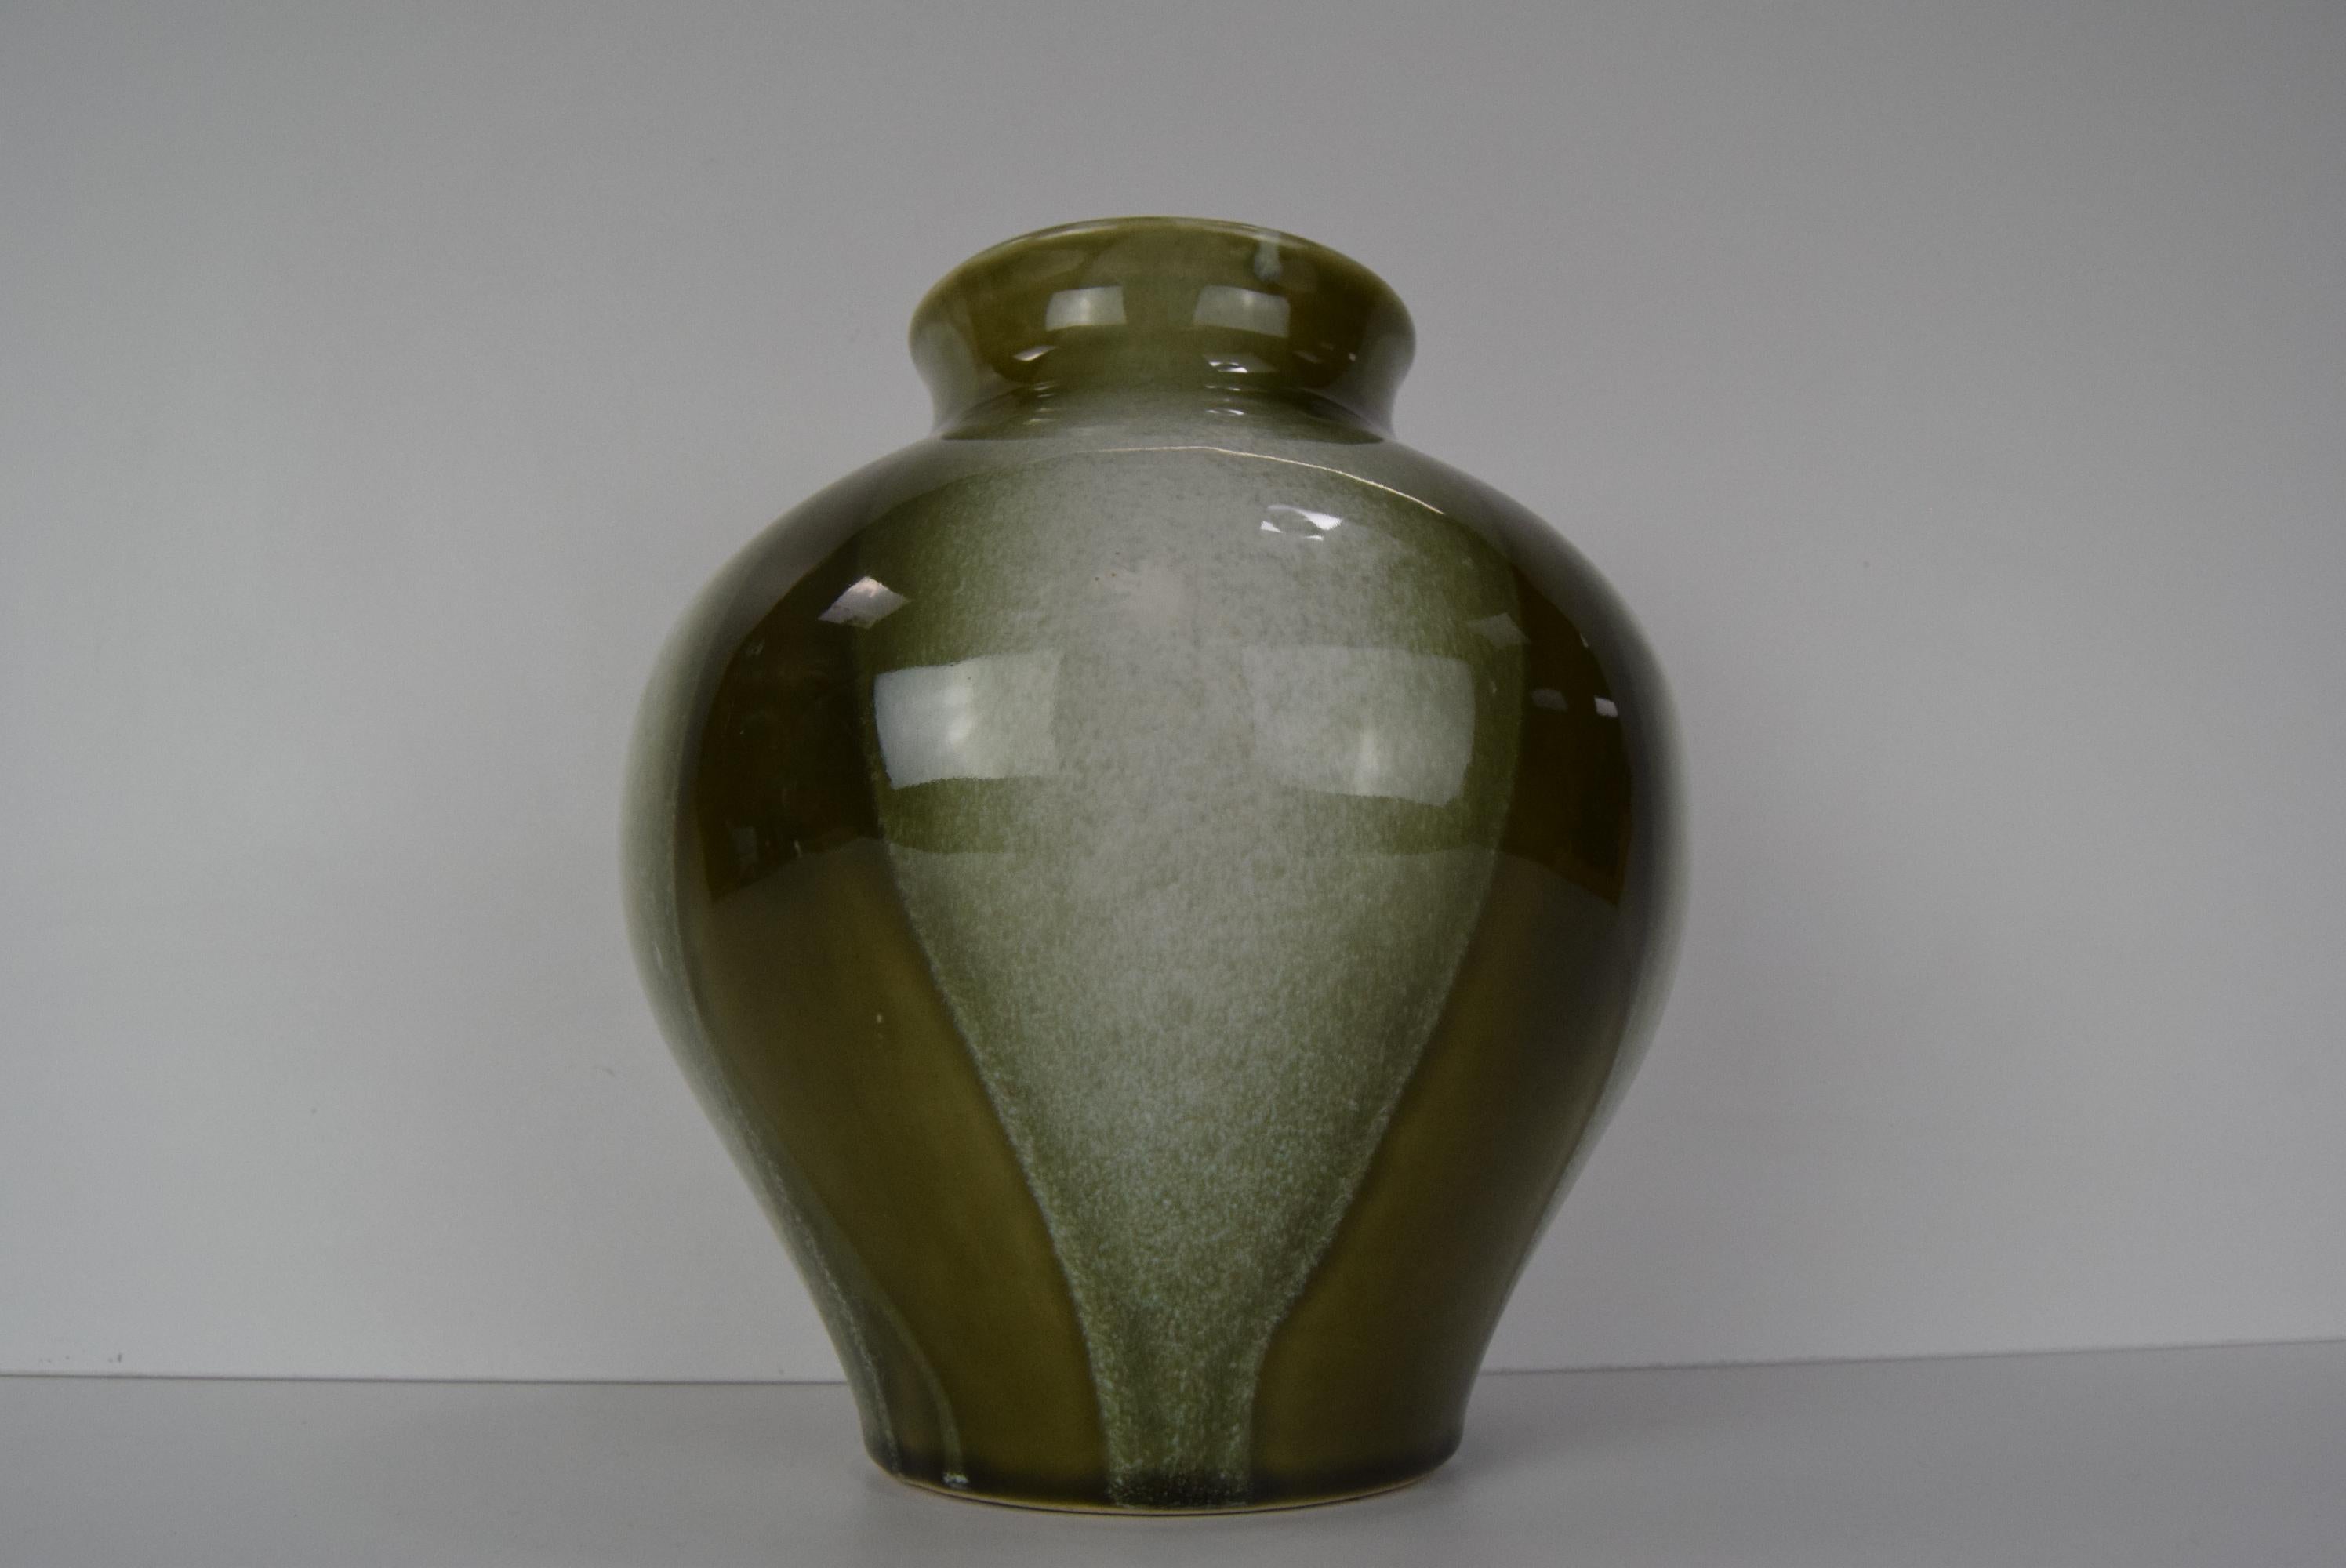 
Vintage-Vase aus Keramik, hergestellt von Ditmar Urbach in der Tschechoslowakei im Jahr 1975.
Aus glasierter, keramischer Masse
Die Vase hat einen kleinen Chip (siehe Foto)
Guter Originalzustand
